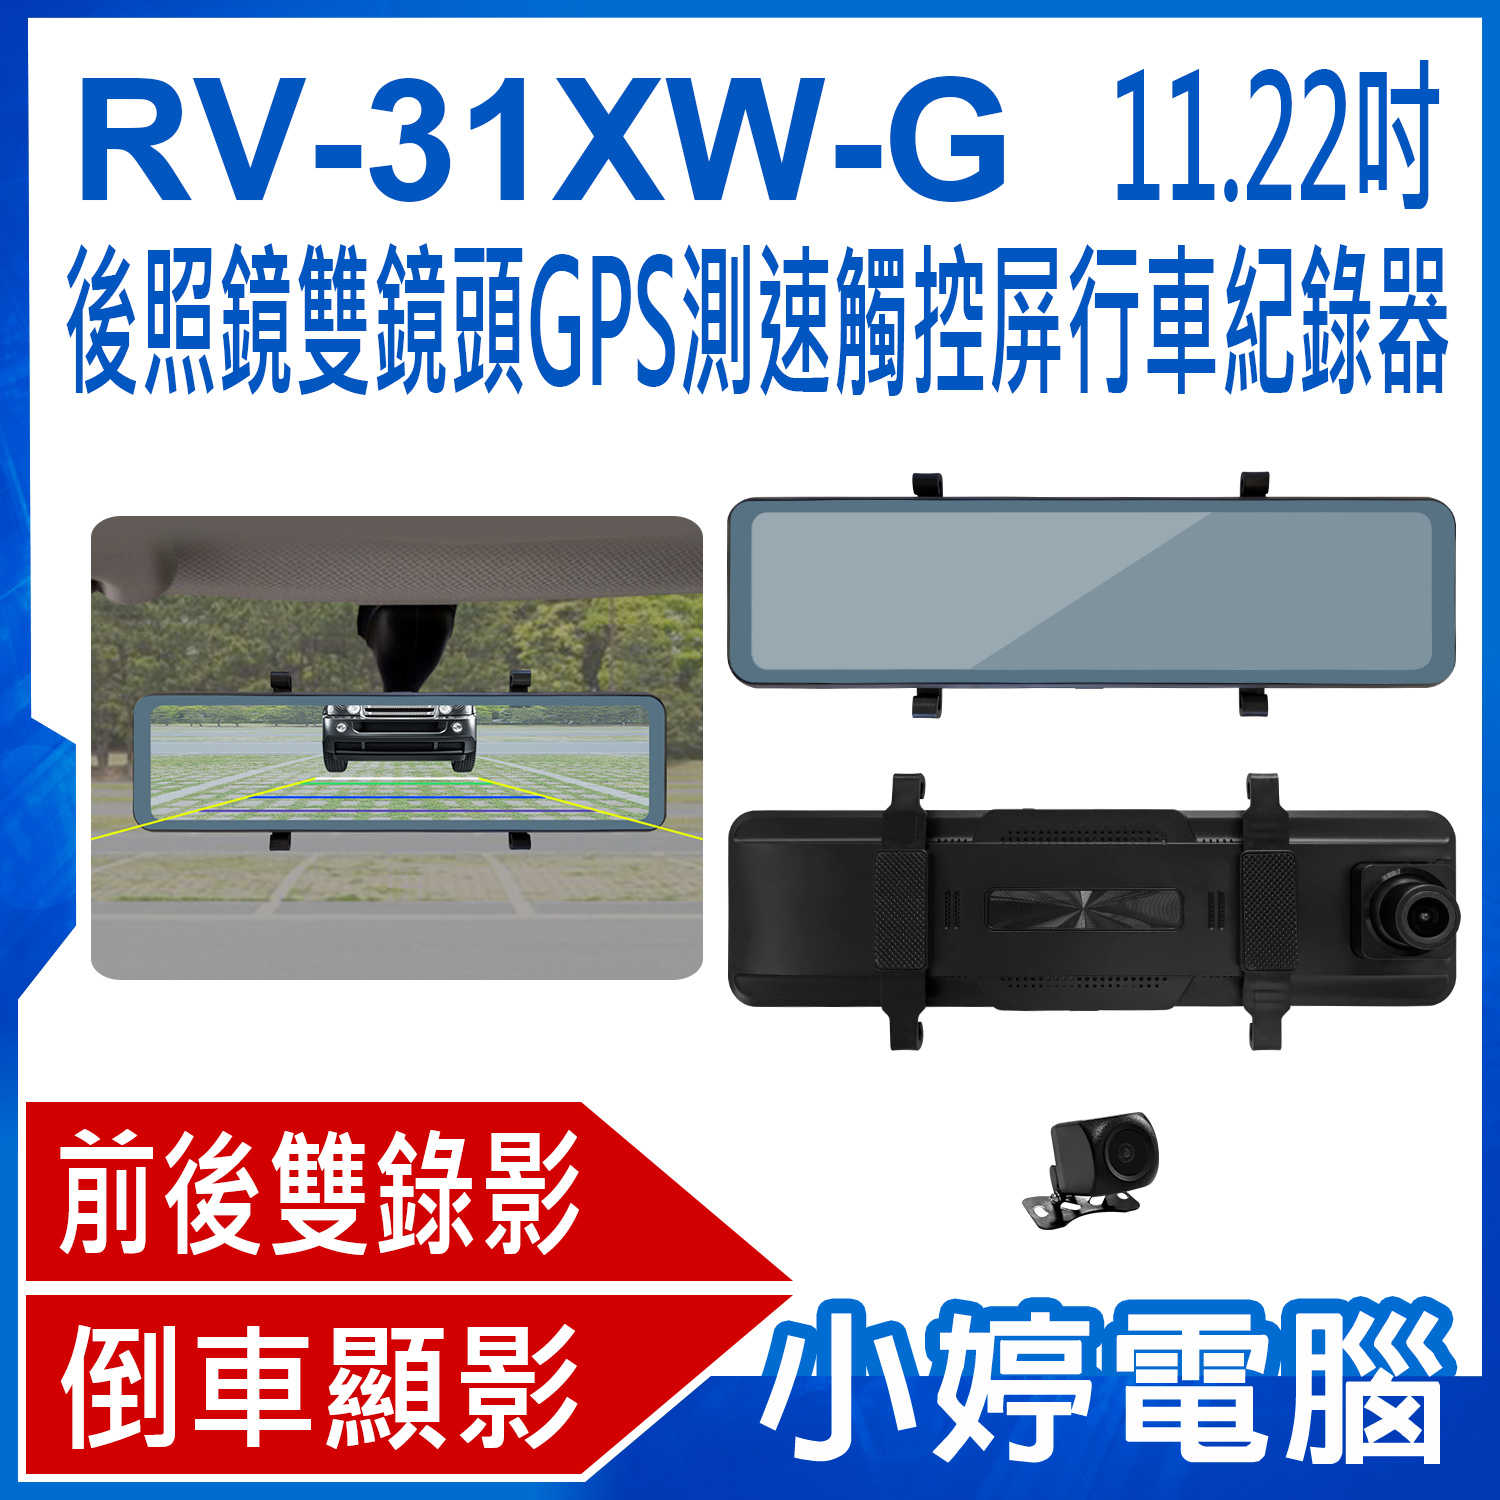 【小婷電腦】RV-31XW-G 11.22吋後照鏡雙鏡頭GPS測速觸控屏行車紀錄器 前後雙錄 倒車顯影